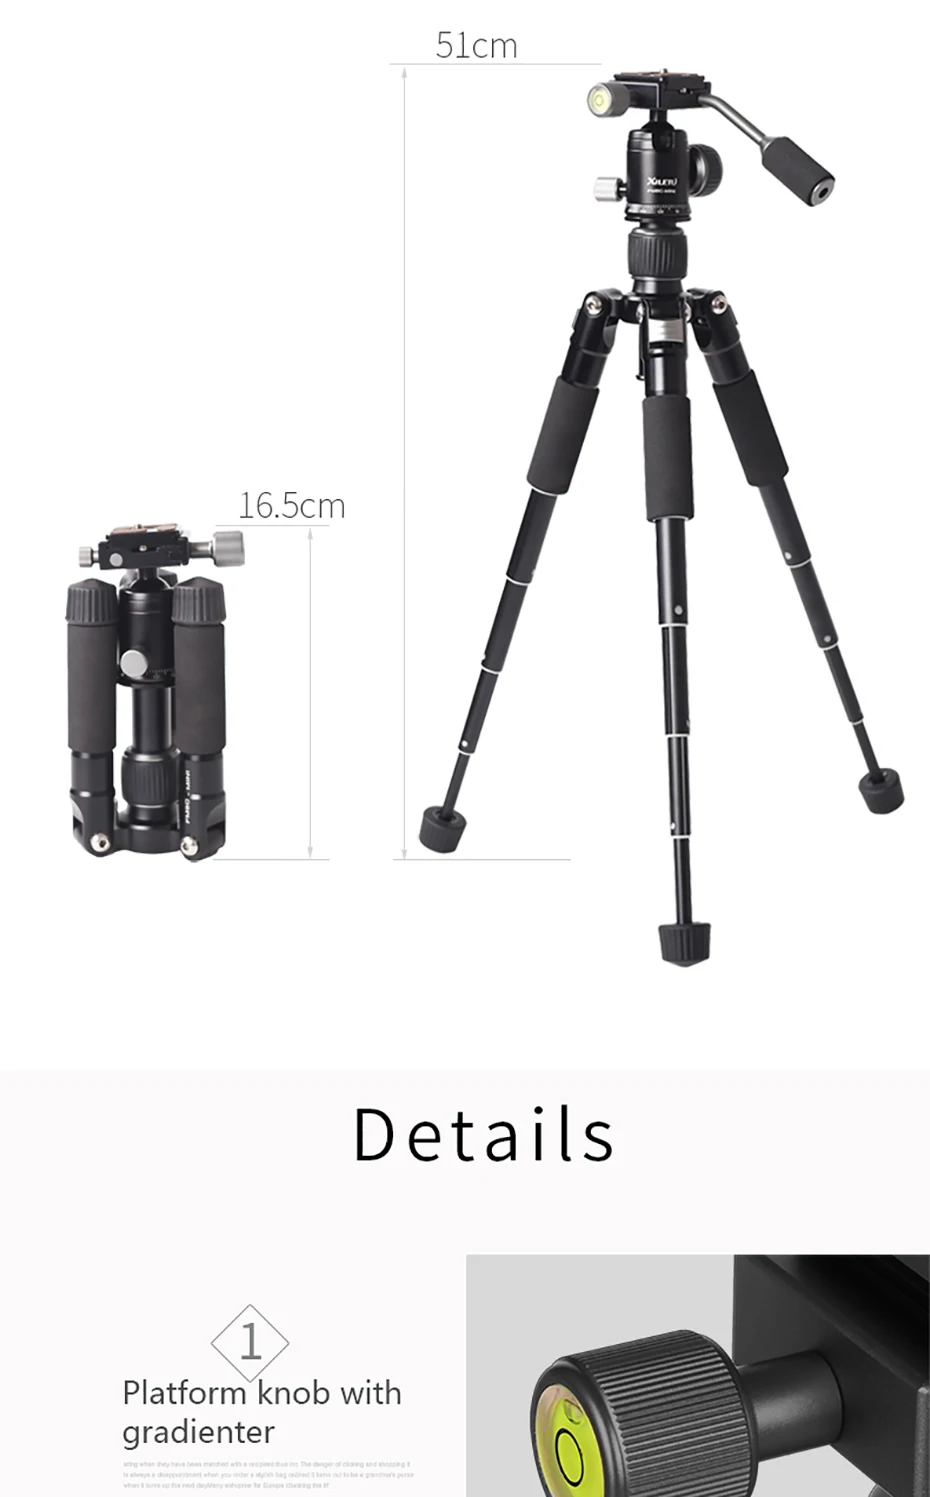 XILETU FM5C Алюминиевый мини стабильный штатив настольного типа и шаровая Головка для DSLR Nikon Canon цифровой беззеркальной камеры смартфона